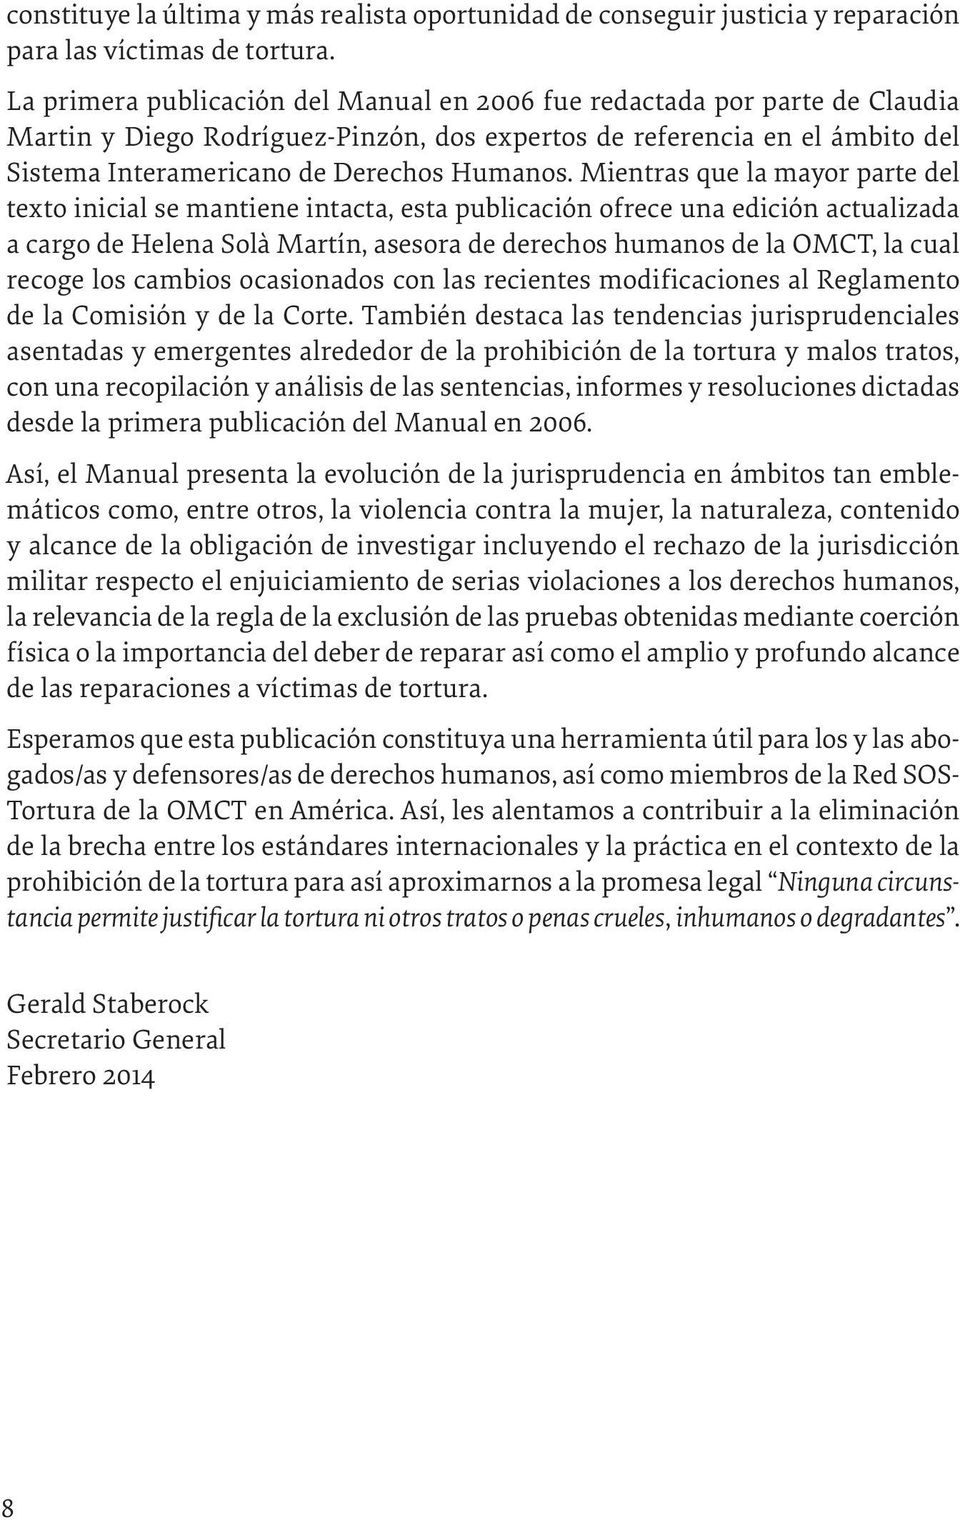 Mientras que la mayor parte del texto inicial se mantiene intacta, esta publicación ofrece una edición actualizada a cargo de Helena Solà Martín, asesora de derechos humanos de la OMCT, la cual